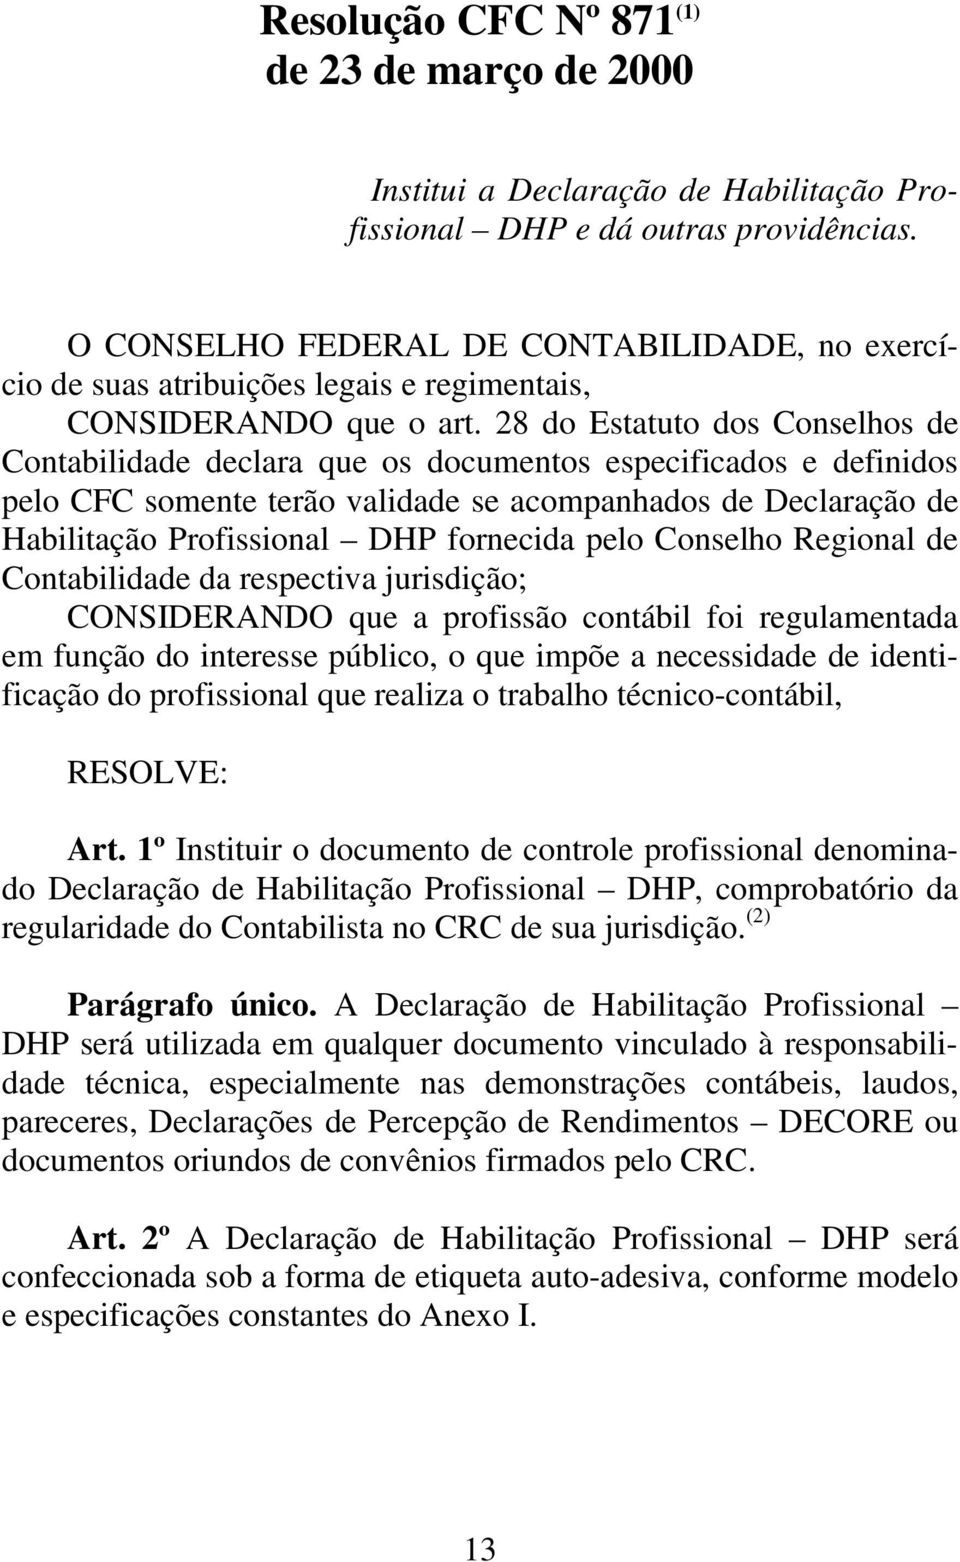 28 do Estatuto dos Conselhos de Contabilidade declara que os documentos especificados e definidos pelo CFC somente terão validade se acompanhados de Declaração de Habilitação Profissional DHP